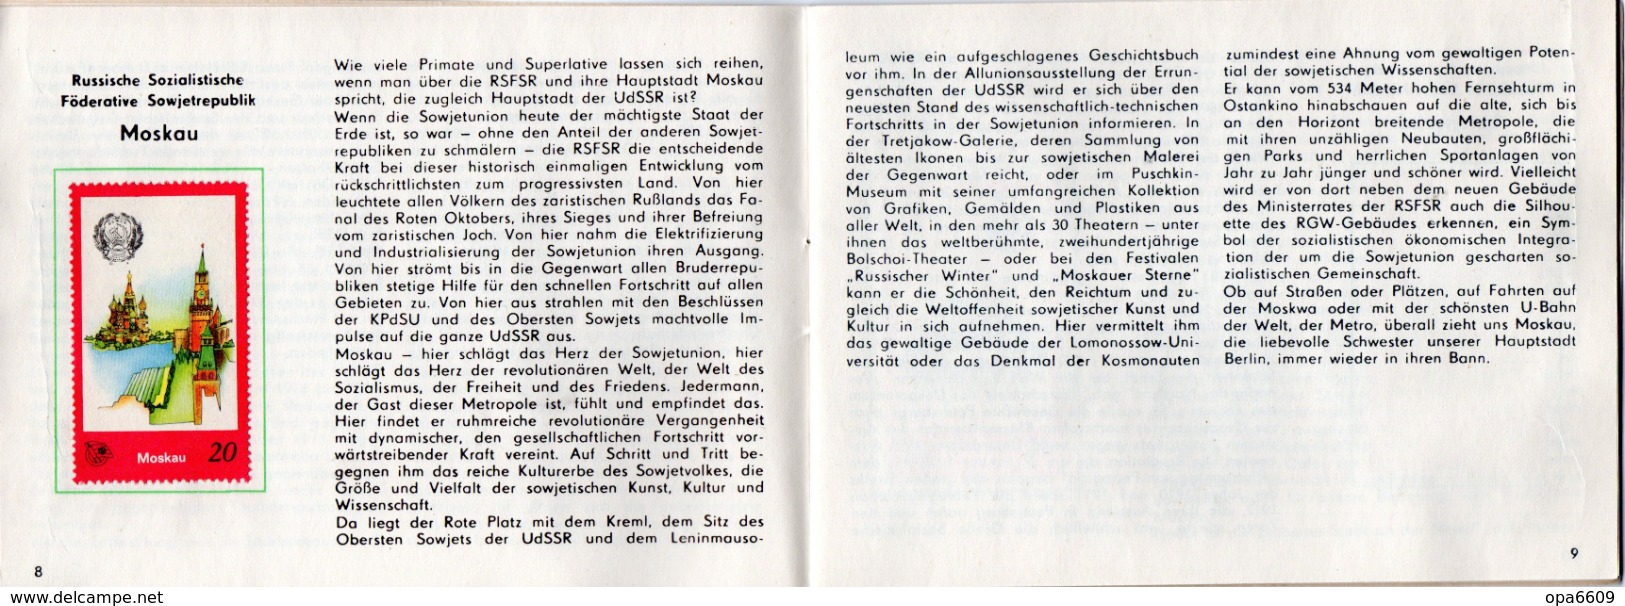 (Kart-ZD)DDR Sammelheft für die DSF-Sondermarkenserie 1977 "Zu Gast bei Freunden" kompl. mit 20 Marken